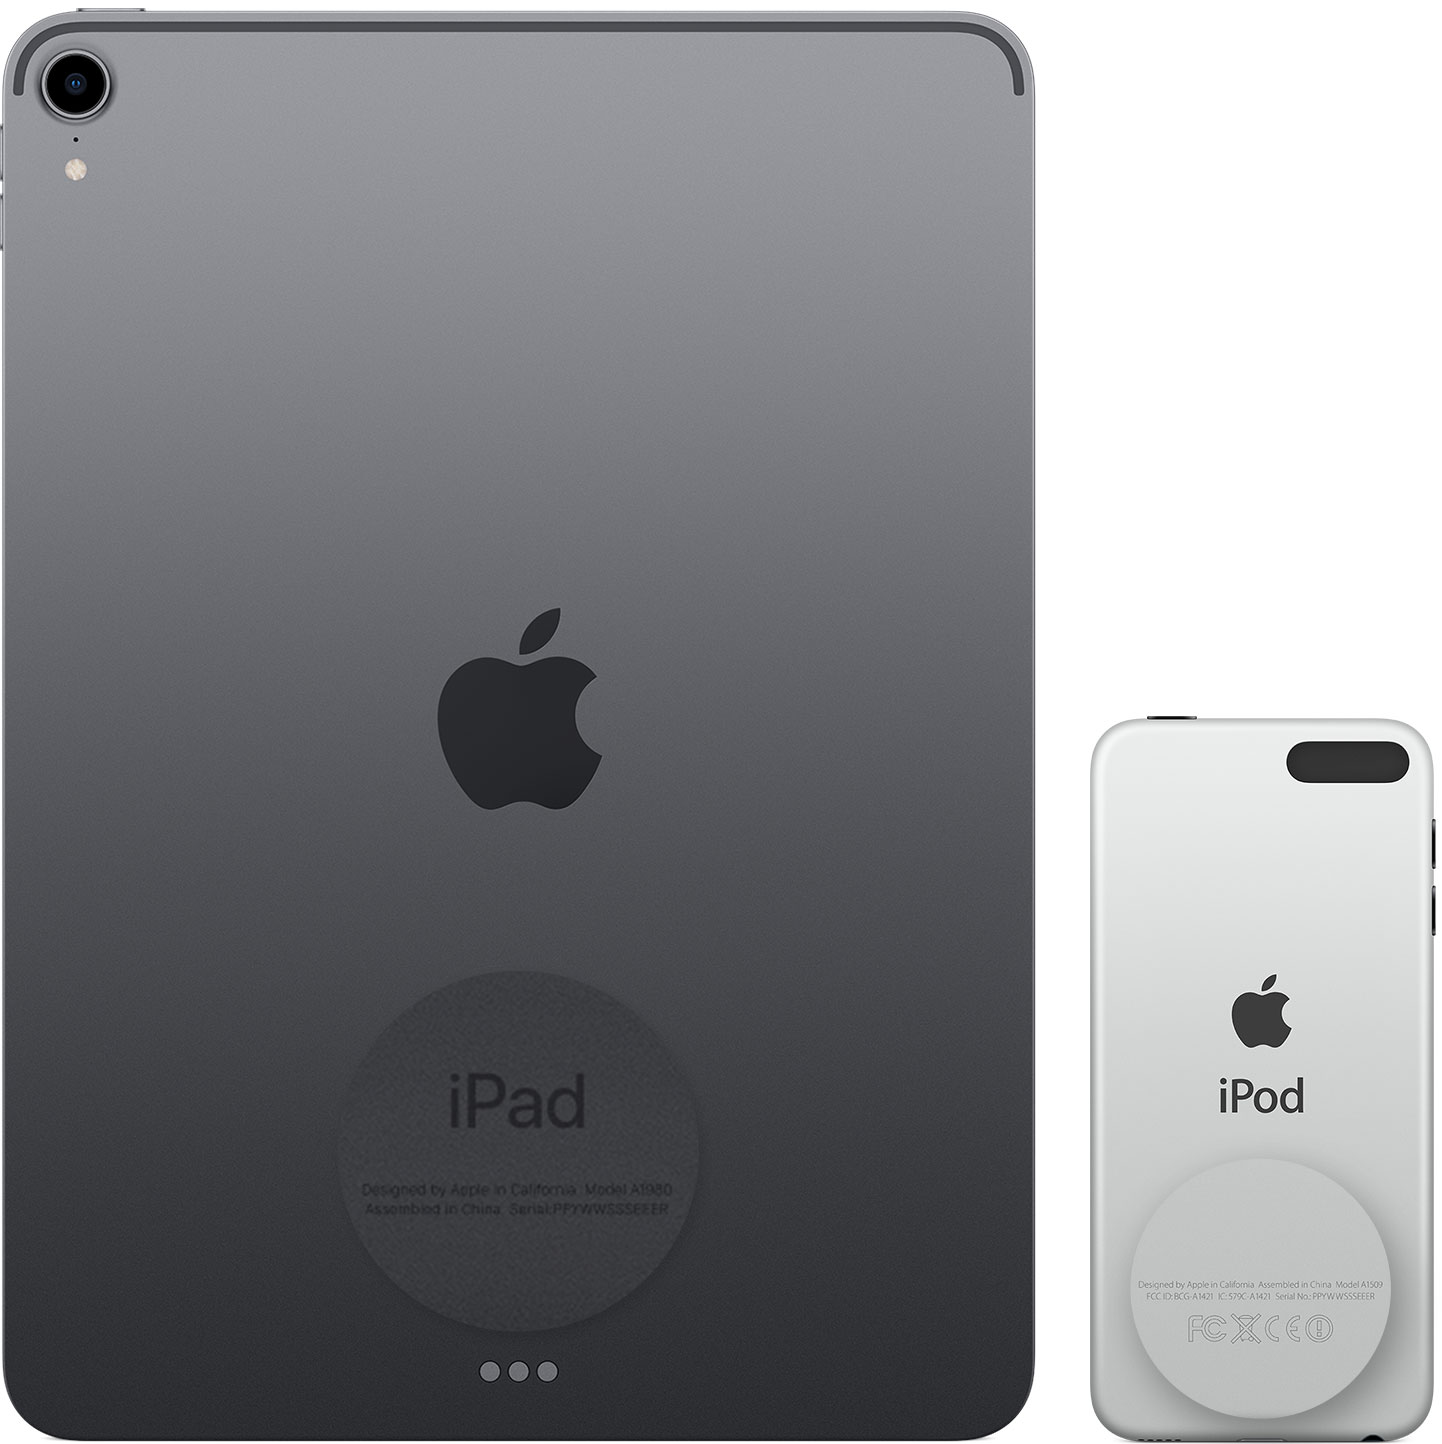 Image montrant la partie arrière d’un iPad et d’un iPod touch